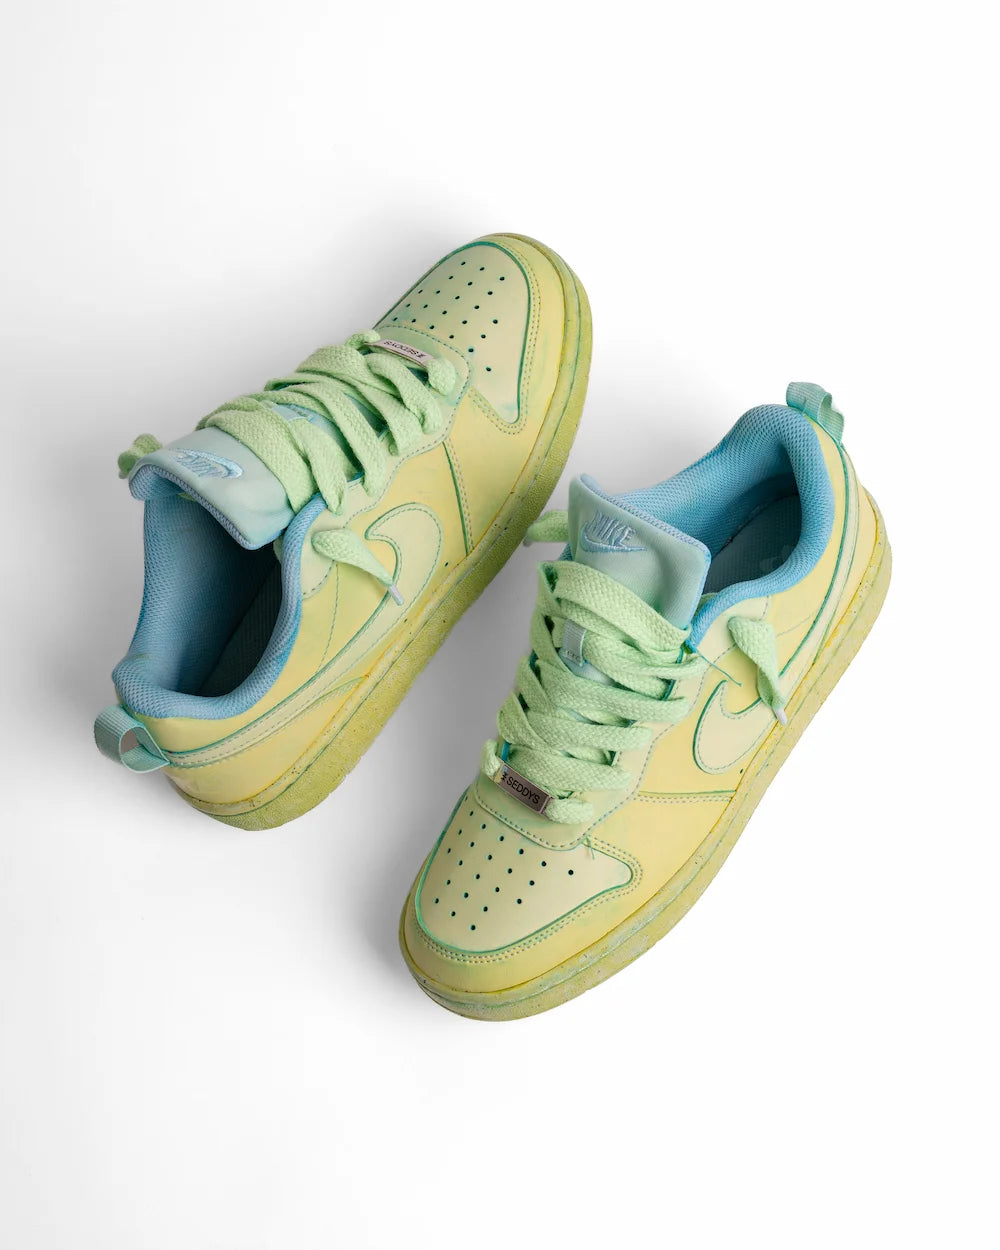 Nike Court Borough Dye Jade Green personalizzata in colore verde acido